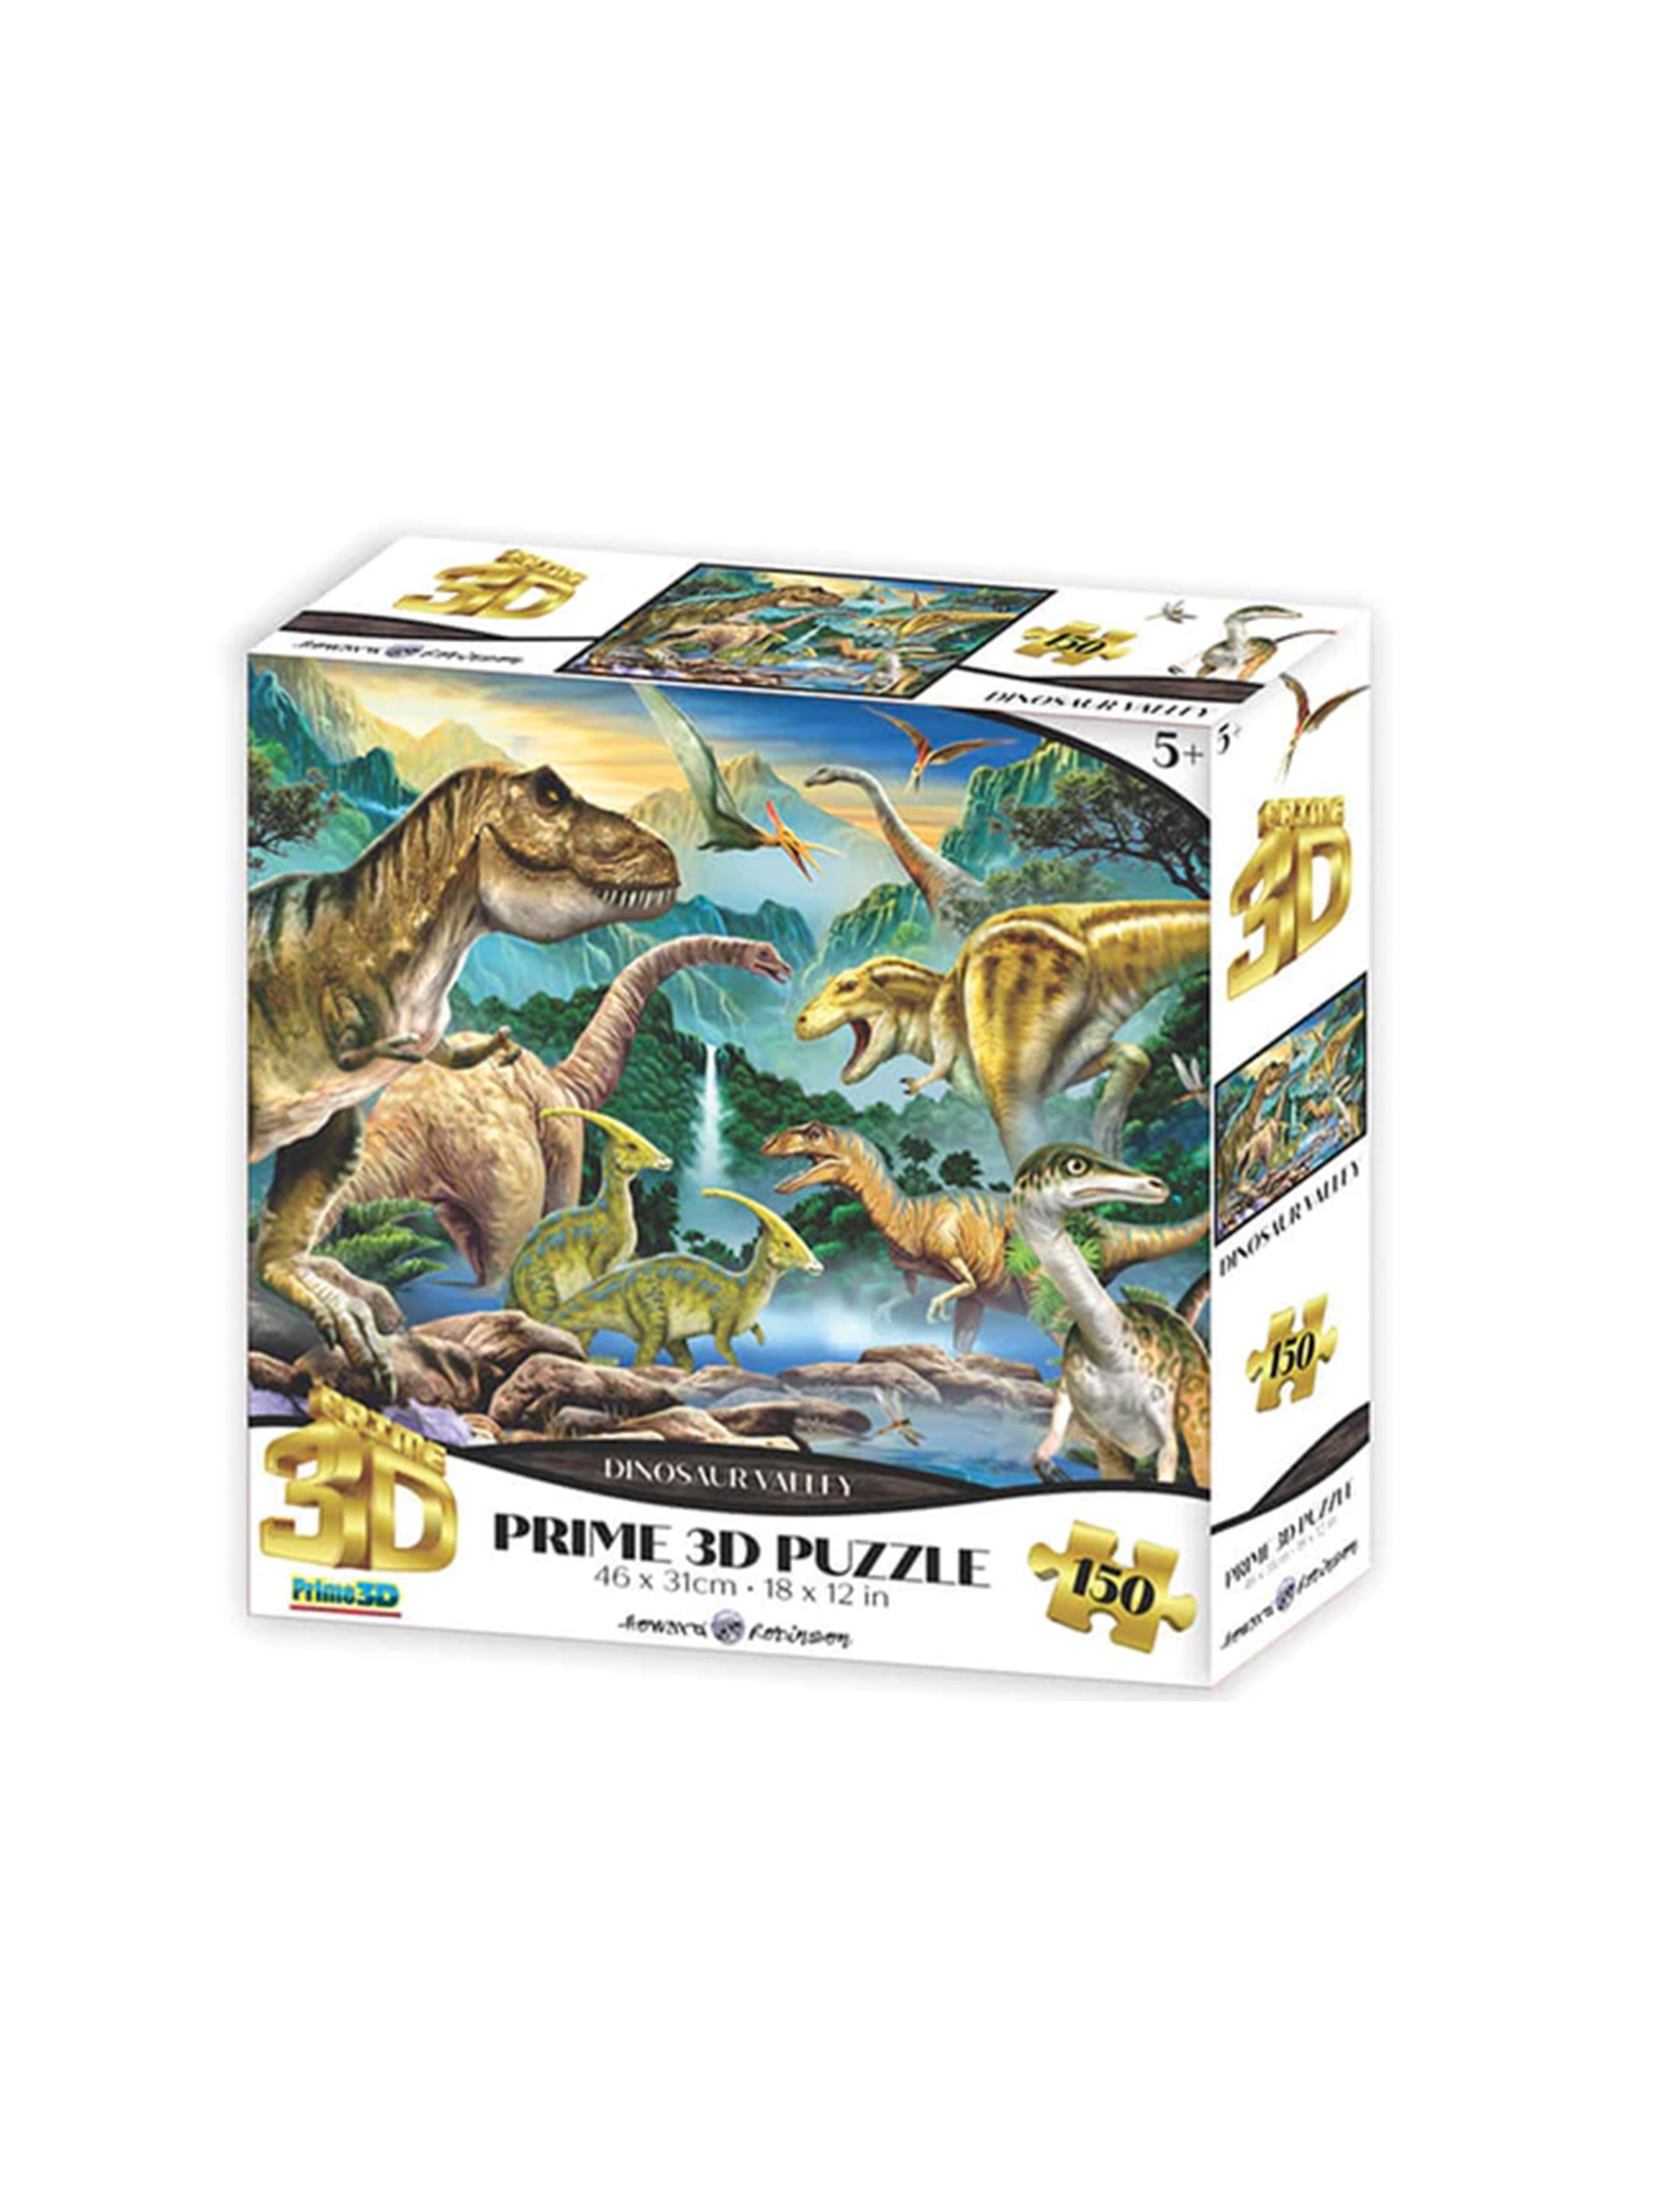 Dinosaur 3D Jigsaw 150pc